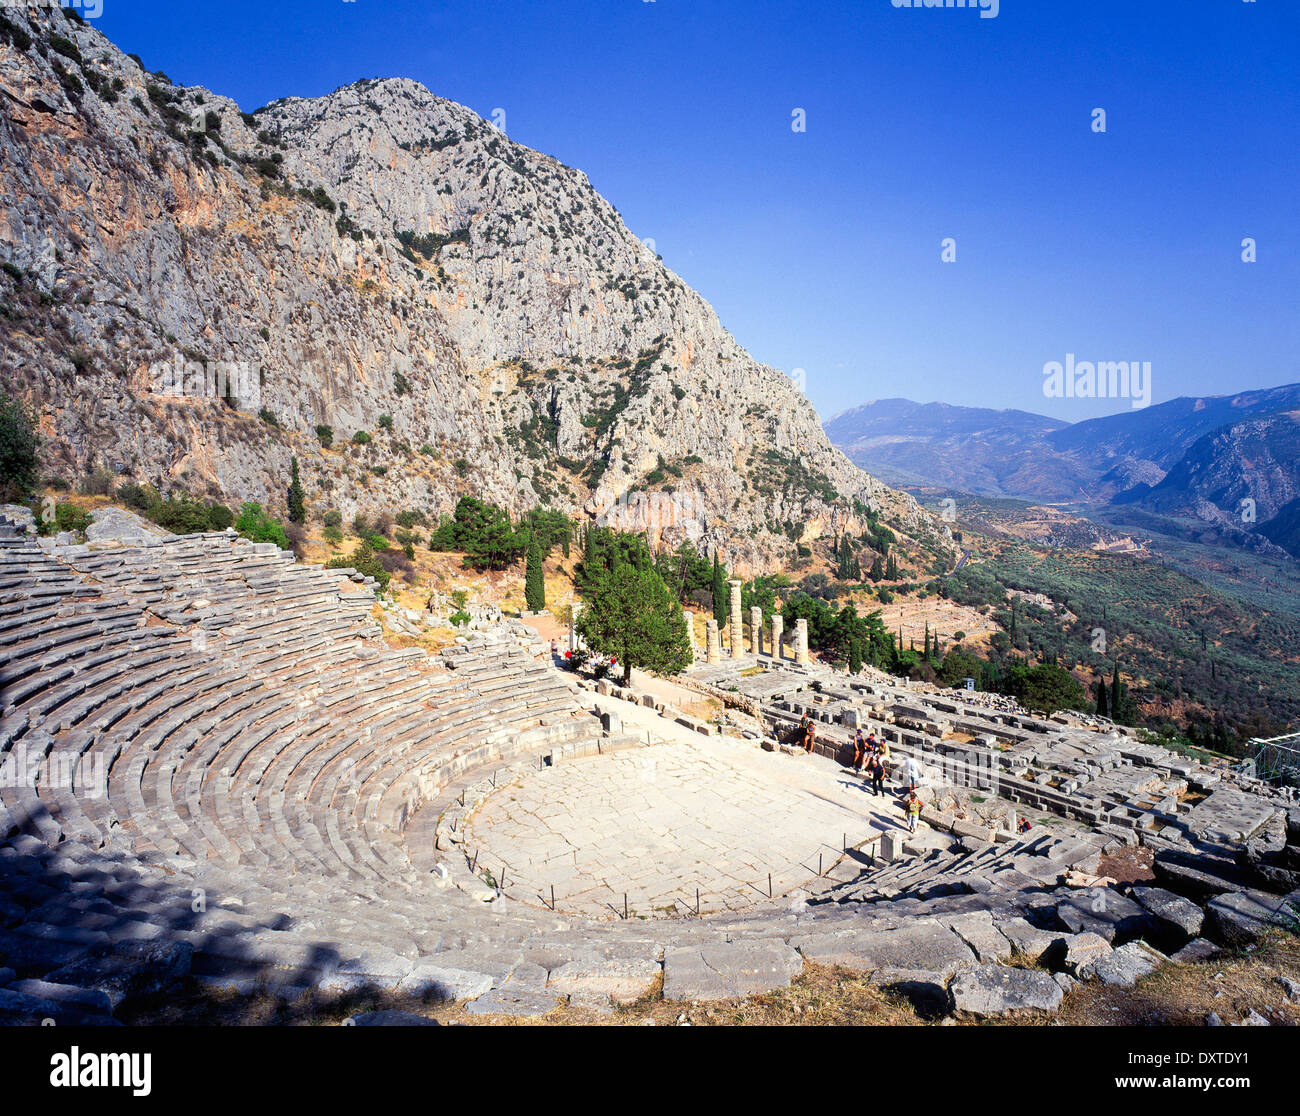 the Temple of Apollo and theatre ruins at ancient Delphi Sterea Ellada Greece Stock Photo